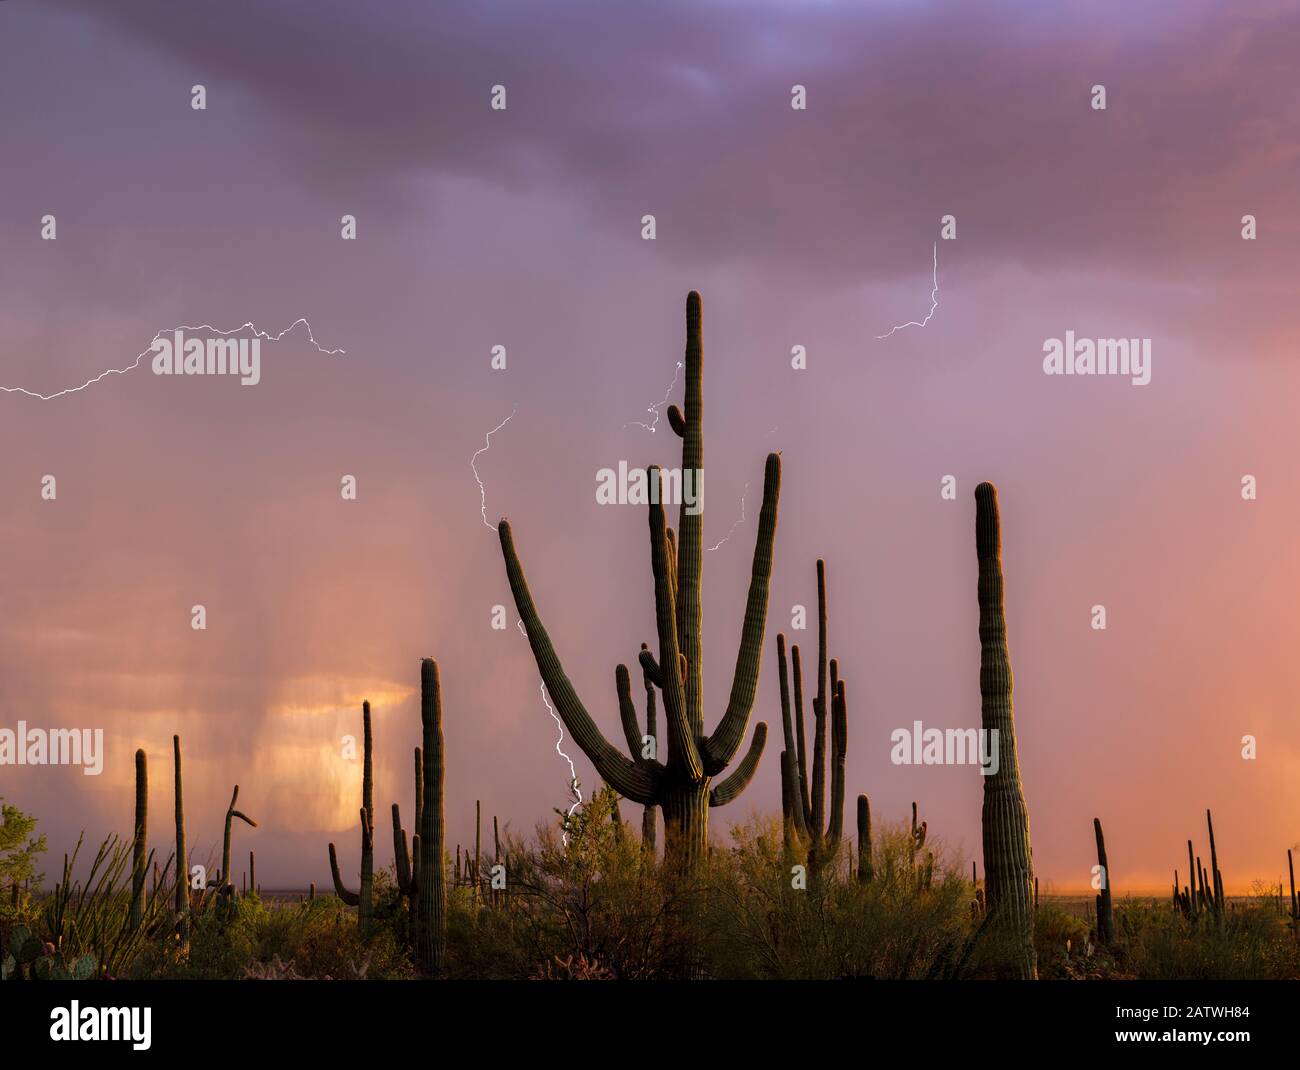 Cactus Saguaro (Carnegia gigantea) au coucher du soleil, pendant une tempête de pluie d'été. Saguaro National Park, Désert De Sonoran, Arizona, États-Unis, Août. Composite numérique. Banque D'Images